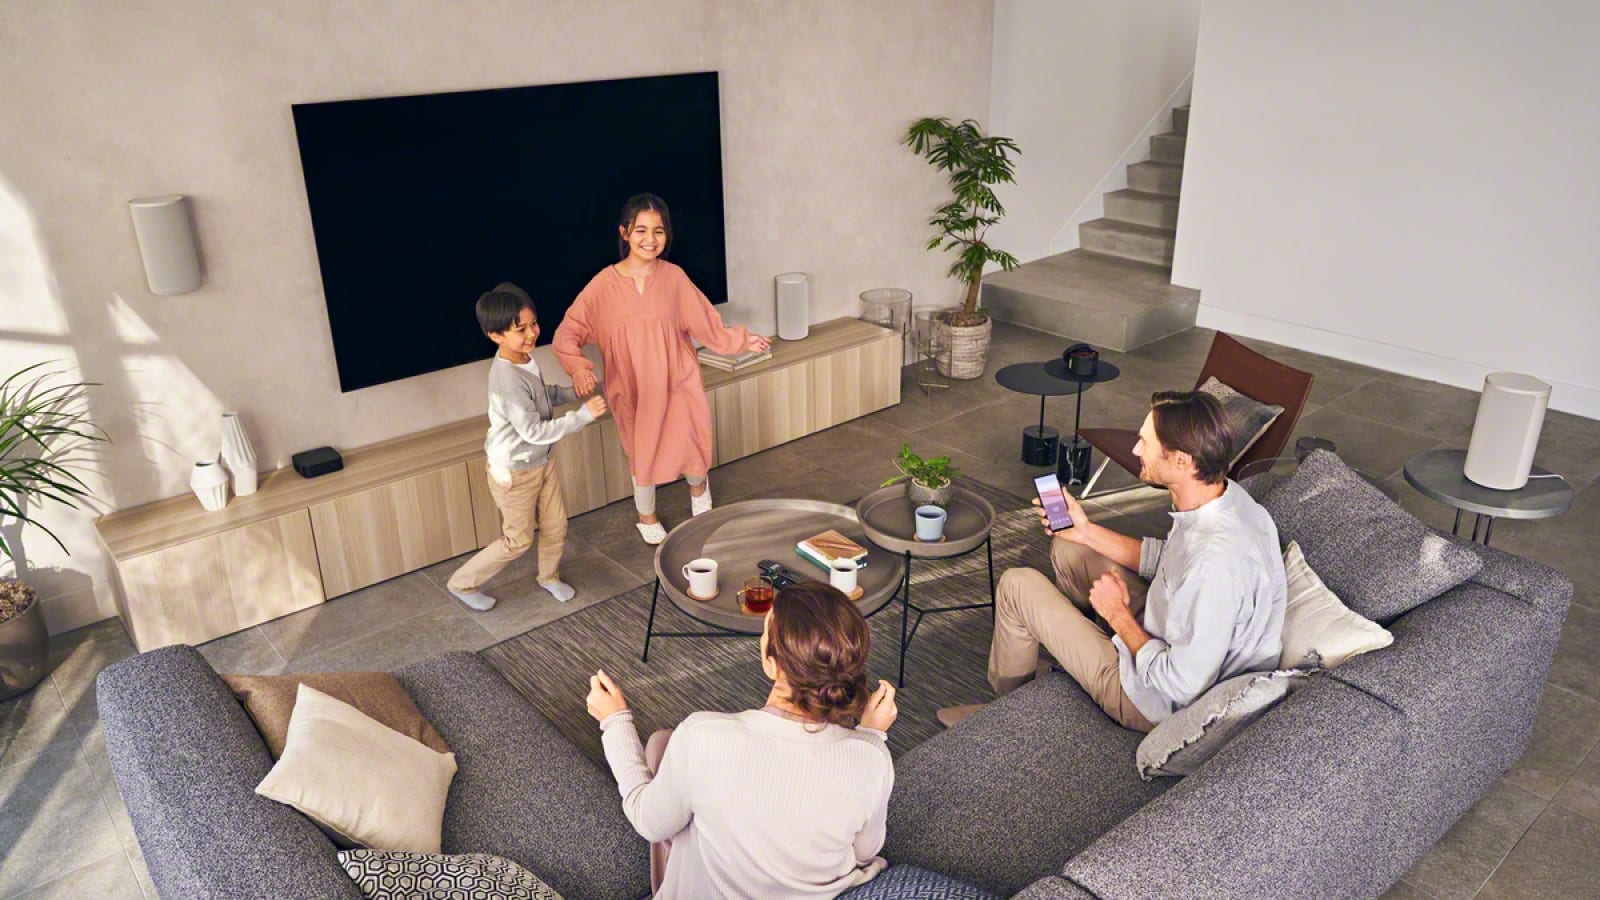 Sony ht-a9 draadloze luidsprekeropstelling in een woonkamer met een gezin dat naar muziek luistert